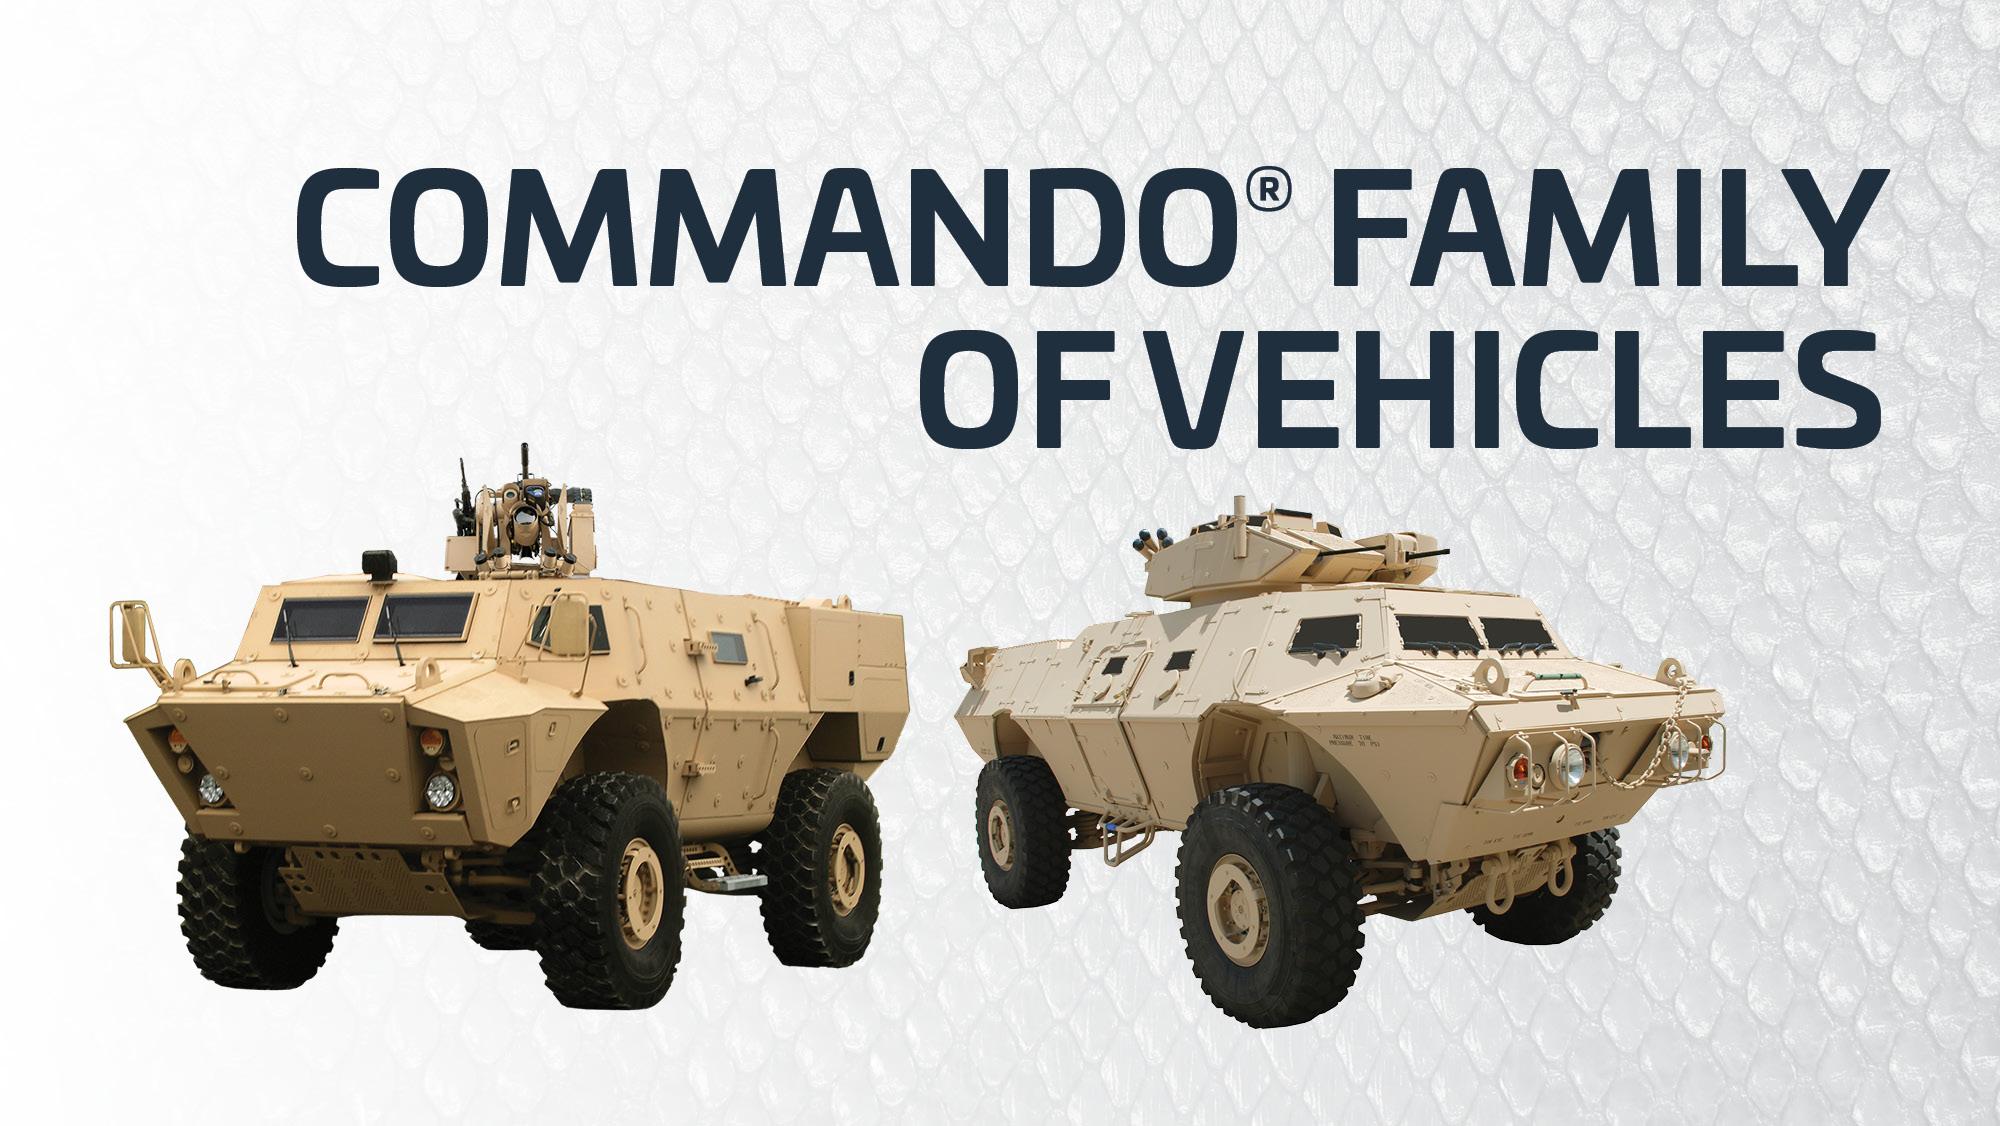 Textron Systems COMMANDO Family of Vehicles